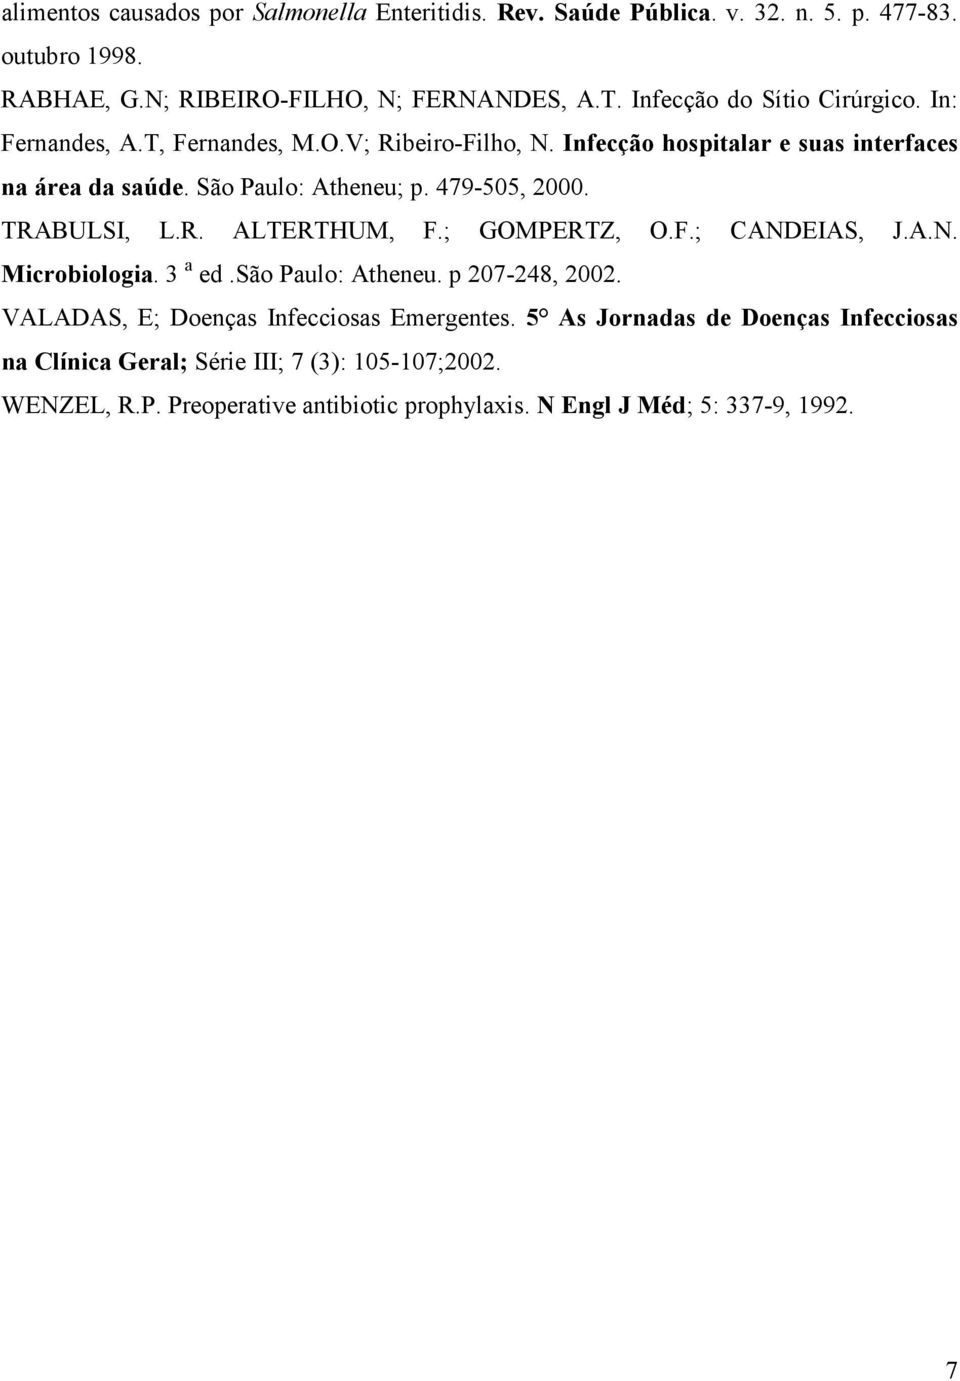 479-505, 2000. TRABULSI, L.R. ALTERTHUM, F.; GOMPERTZ, O.F.; CANDEIAS, J.A.N. Microbiologia. 3 a ed.são Paulo: Atheneu. p 207-248, 2002.